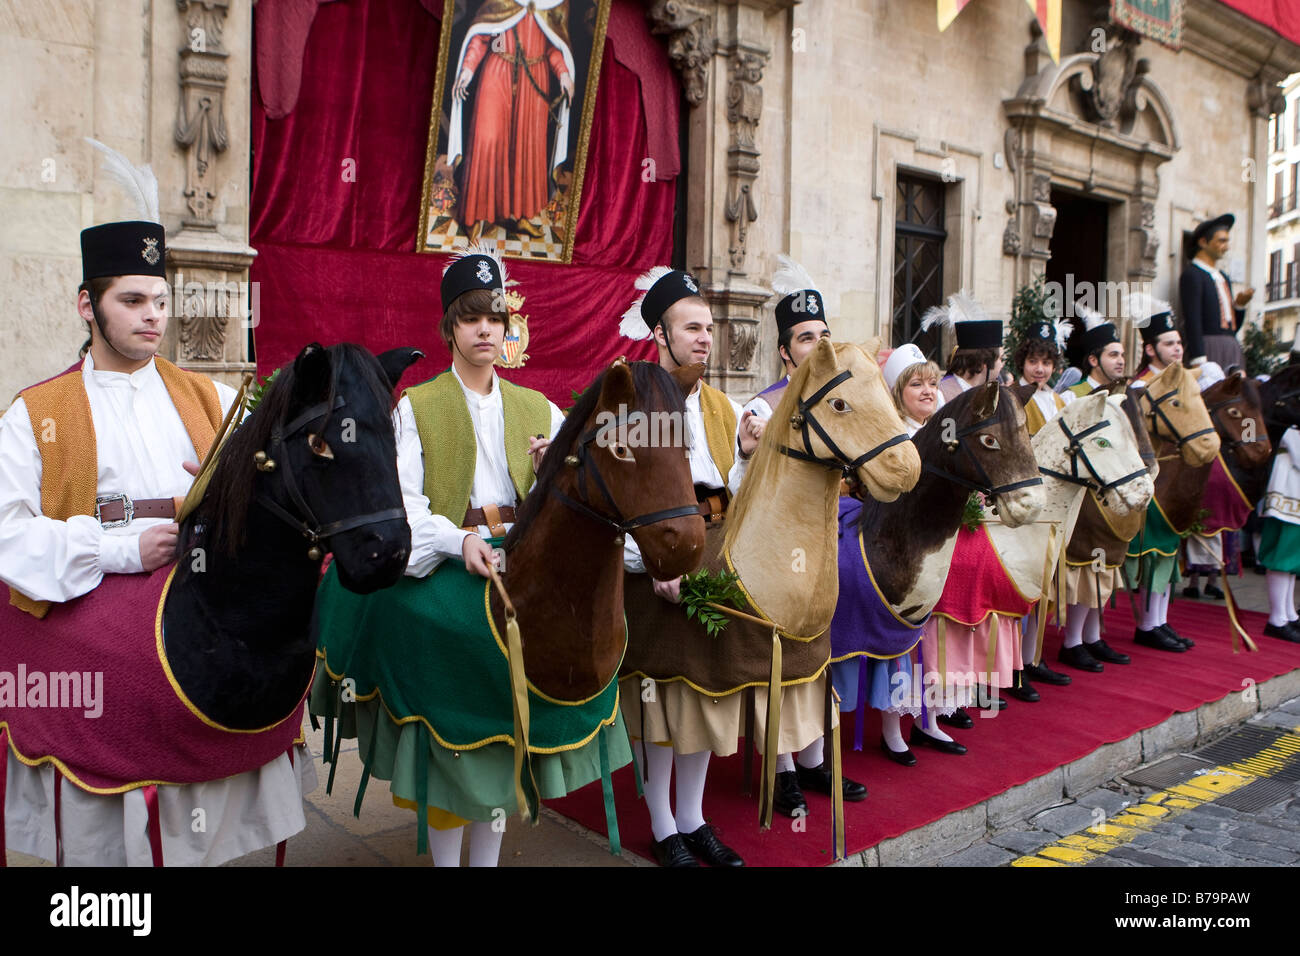 Els Cavallets, celebrare la Diada, o catalano Giornata Nazionale, in Palma di Mallorca Foto Stock